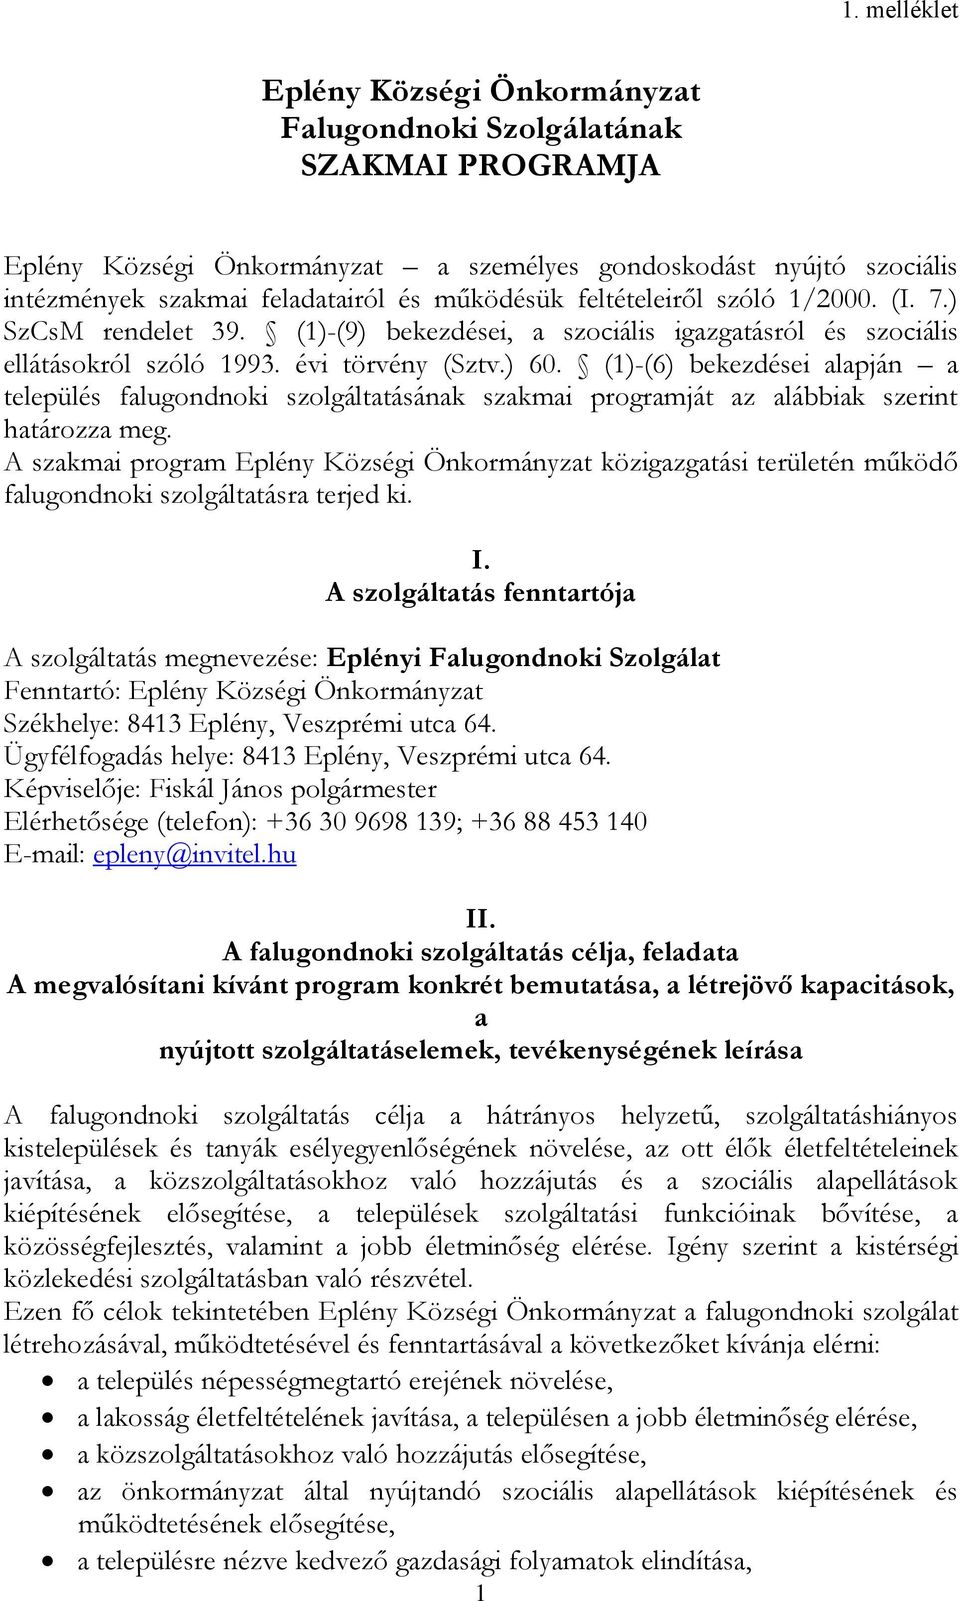 Eplény Községi Önkormányzat Falugondnoki Szolgálatának SZAKMAI PROGRAMJA -  PDF Ingyenes letöltés